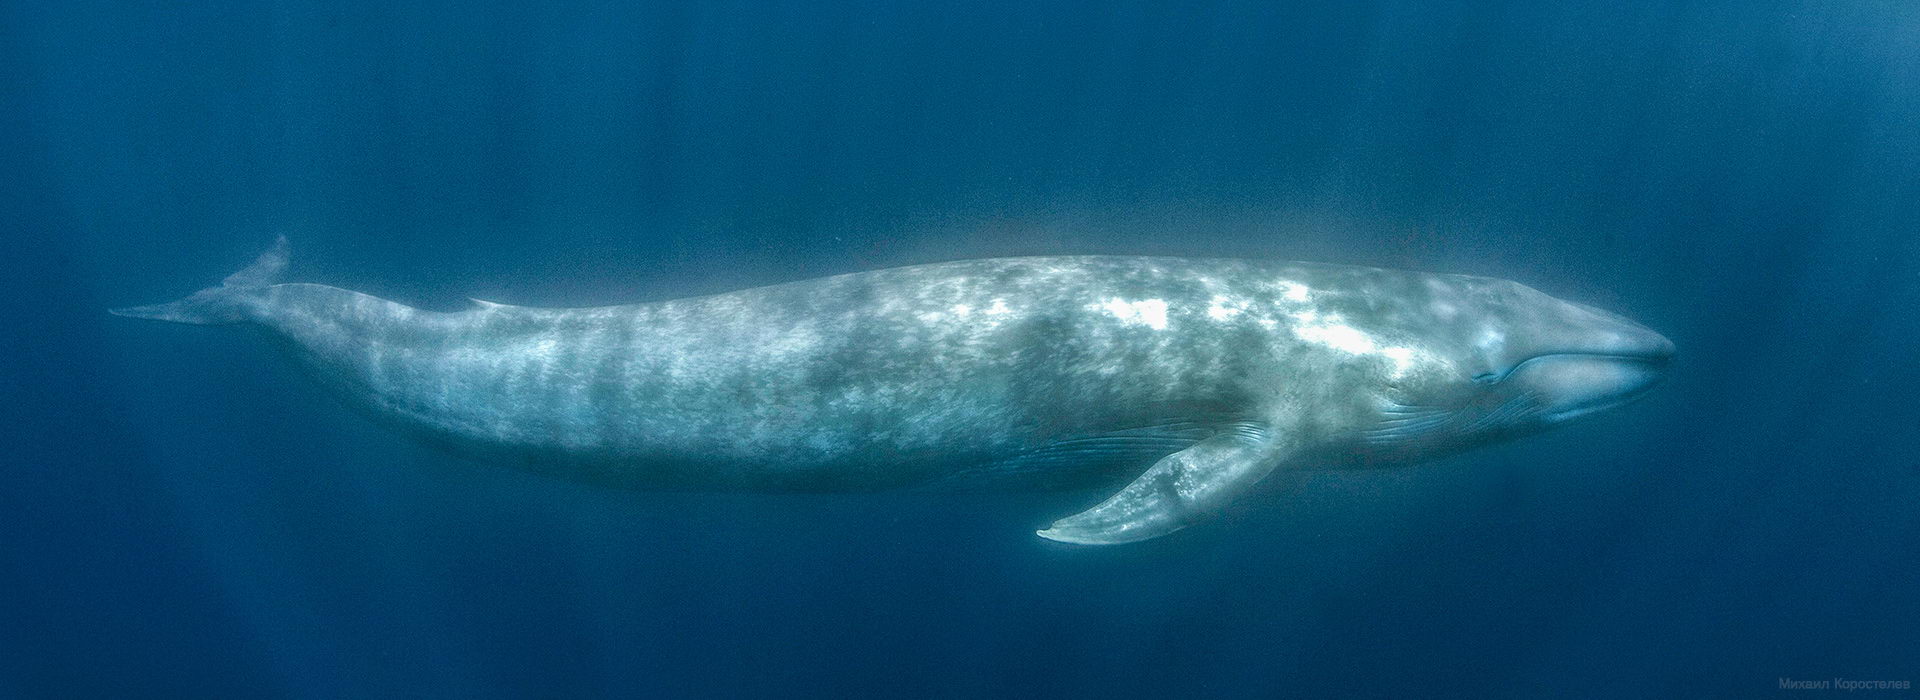 Самое крупное современное животное синий кит. Синий кит 33 метра. Голубой кит. Кит 200 тонн. Интересные факты о синем ките.